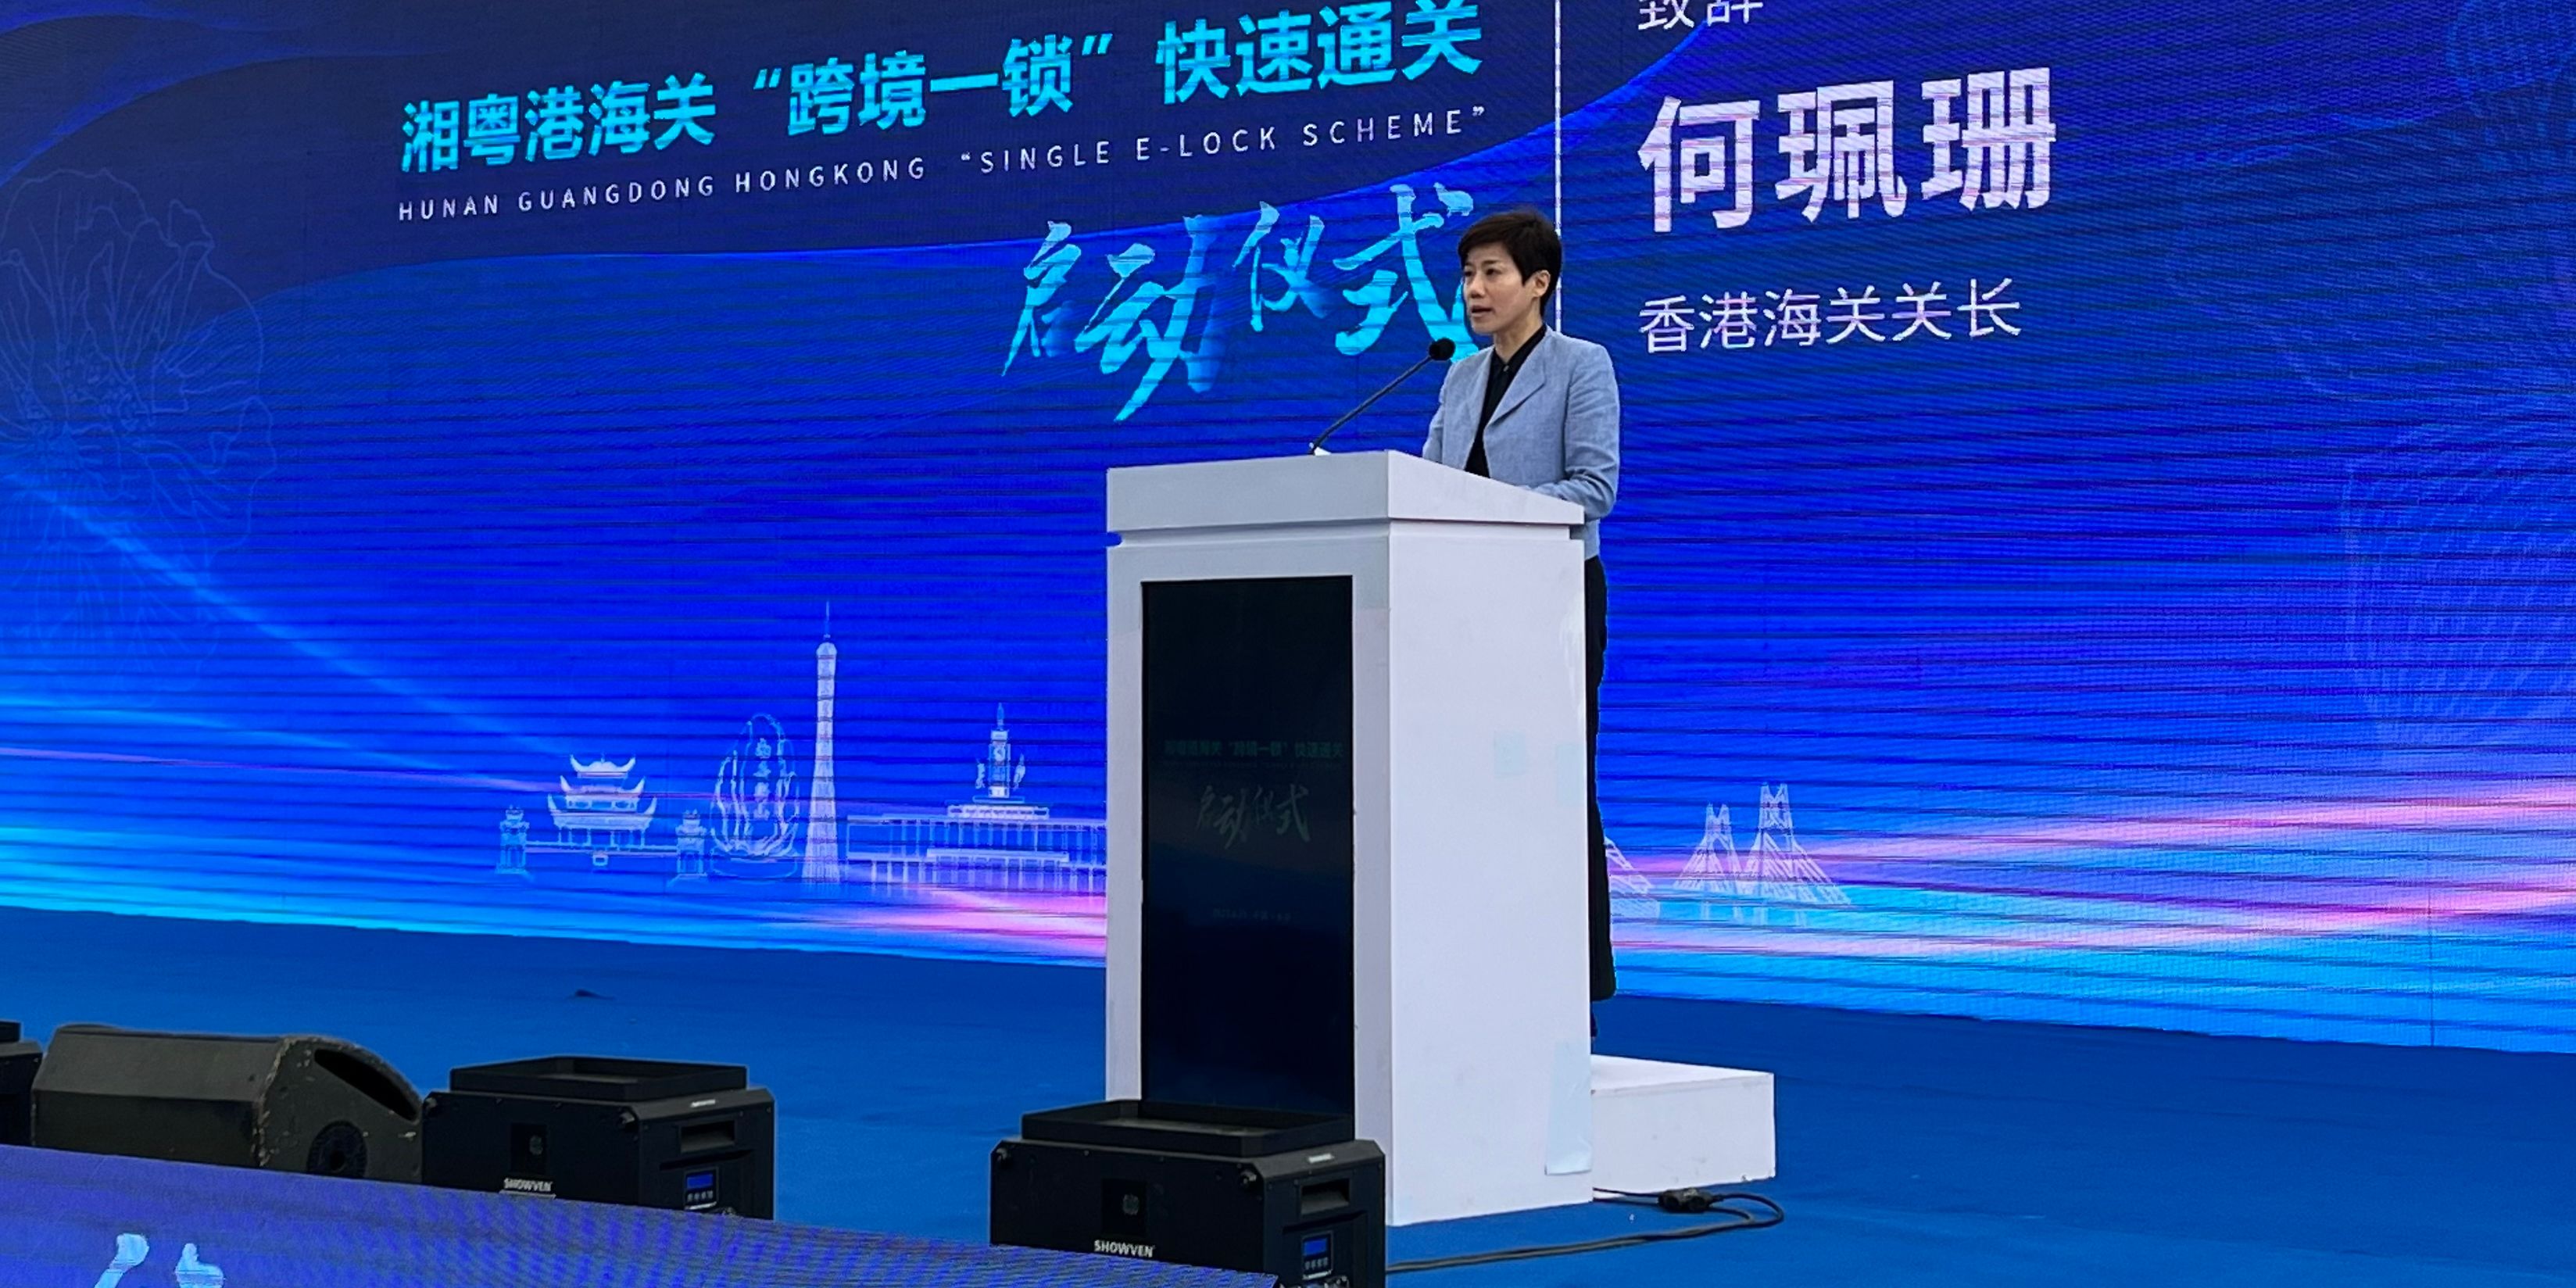 Hunan-Guangdong-Hong Kong Single E-lock Scheme officially launched